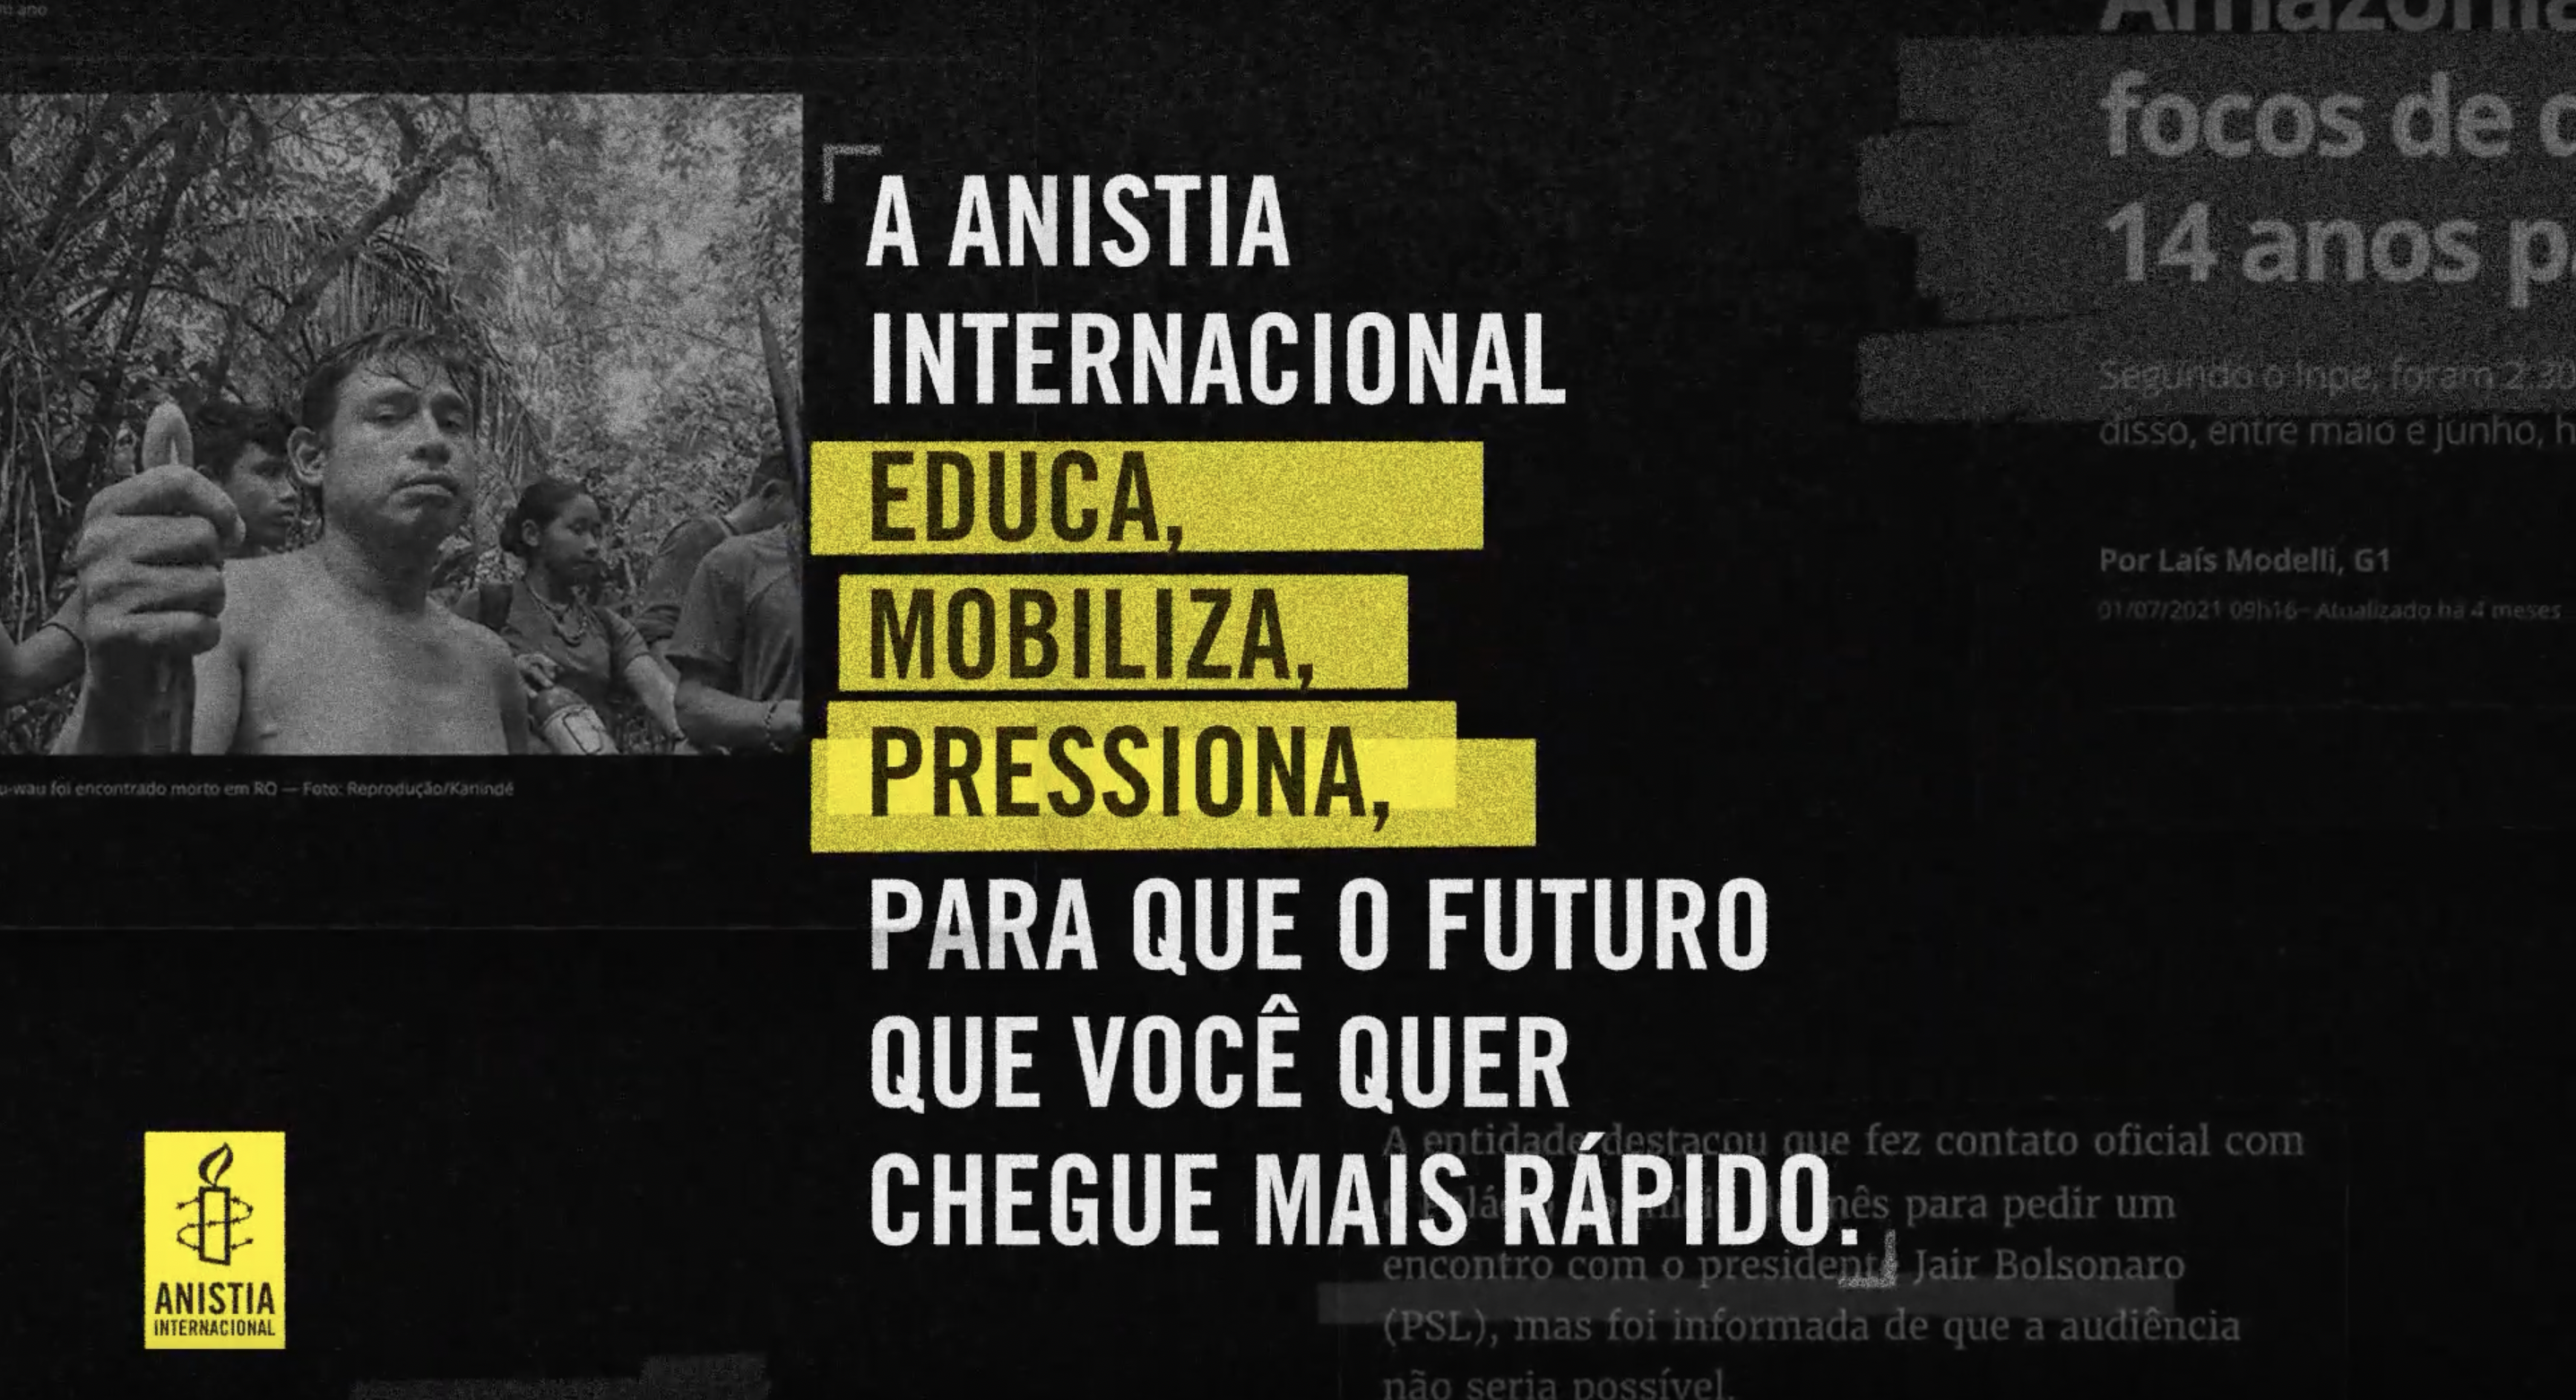 A Anistia Internacional educa, mobiliza, pressiona, para que o futuro que você quer chegue mais rápido.